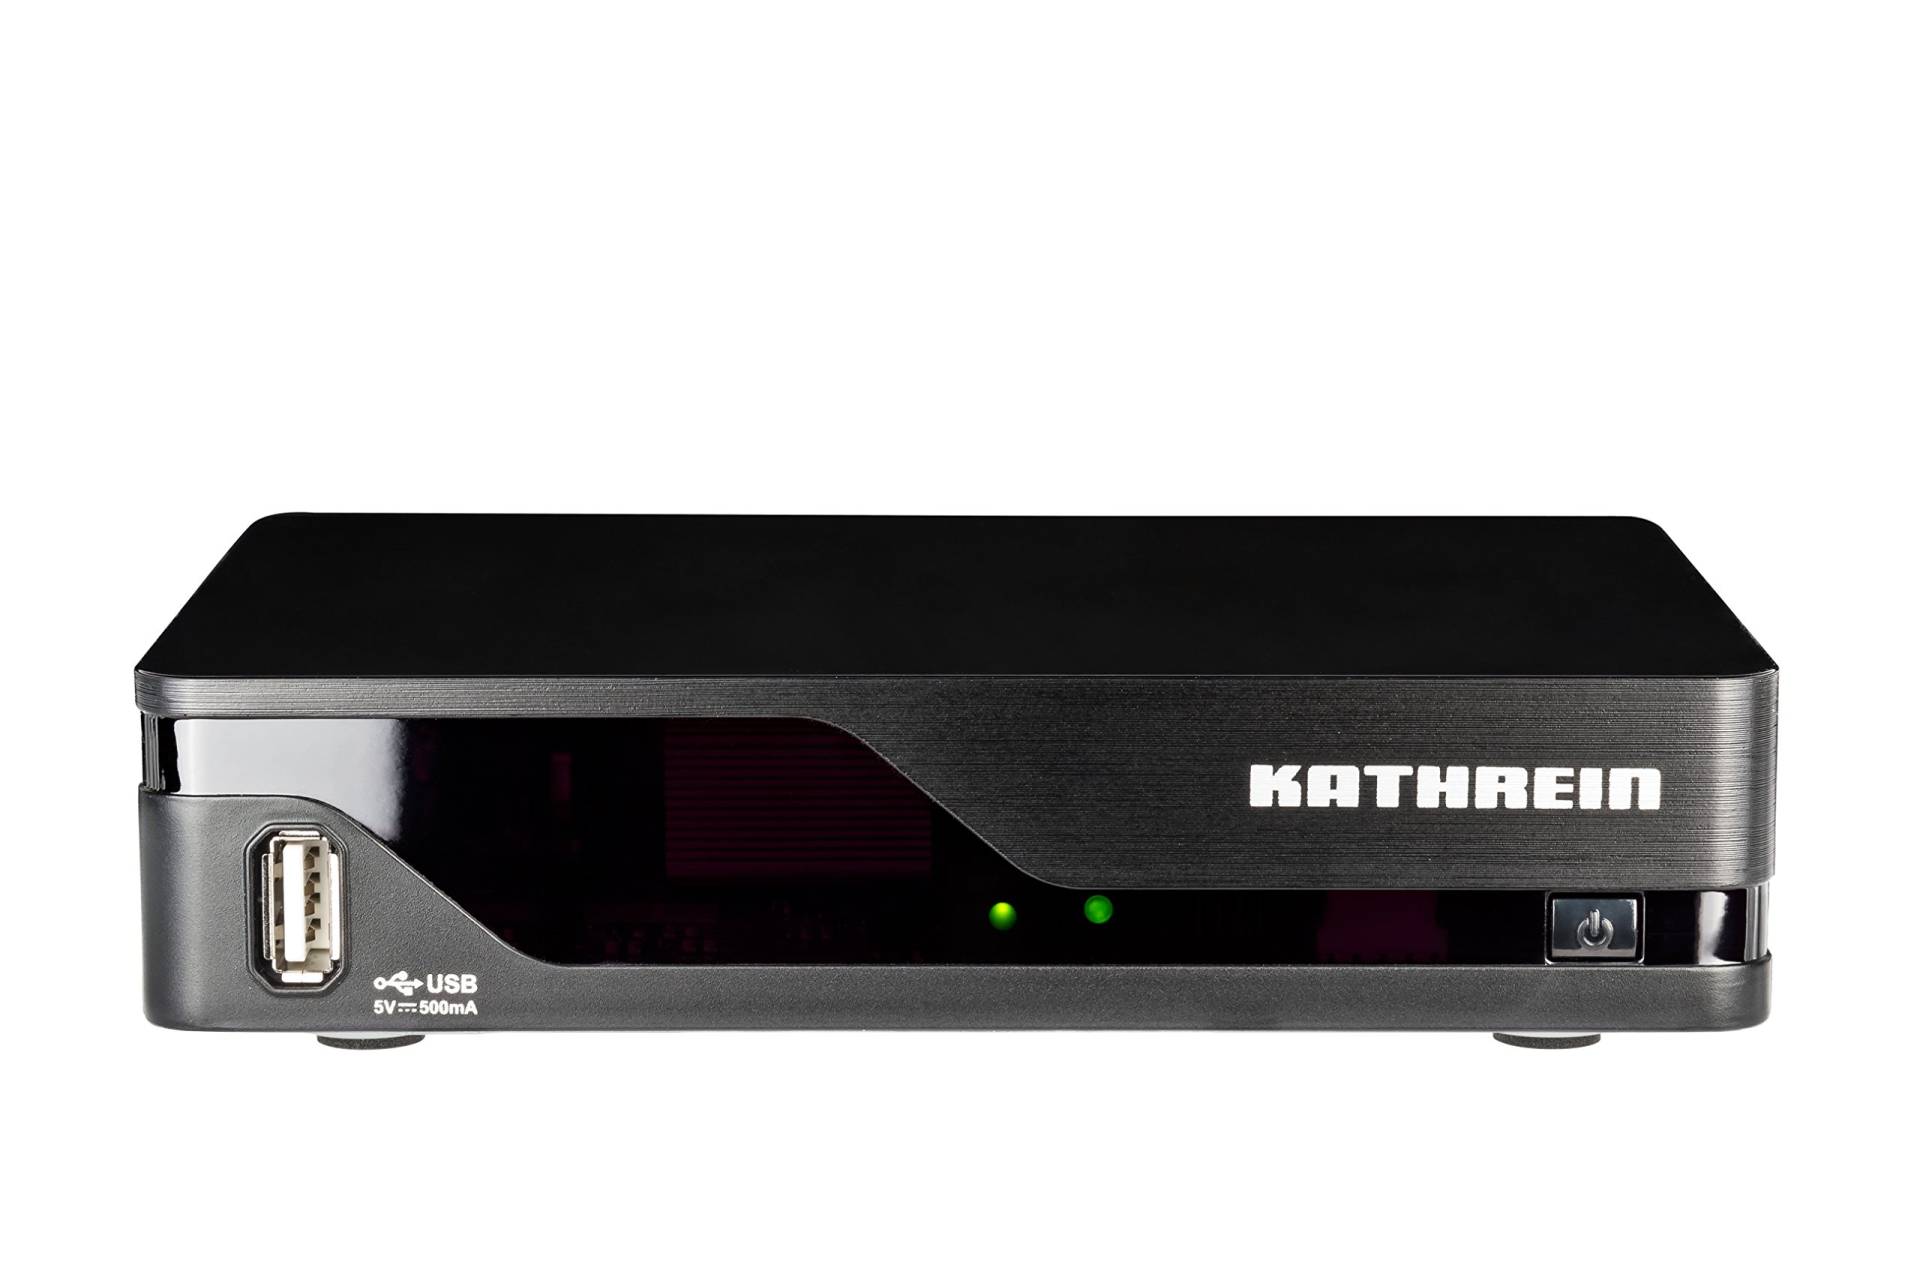 Kathrein 20210241 UFT 930sw DVB-T2 Receiver, schwarz von Kathrein